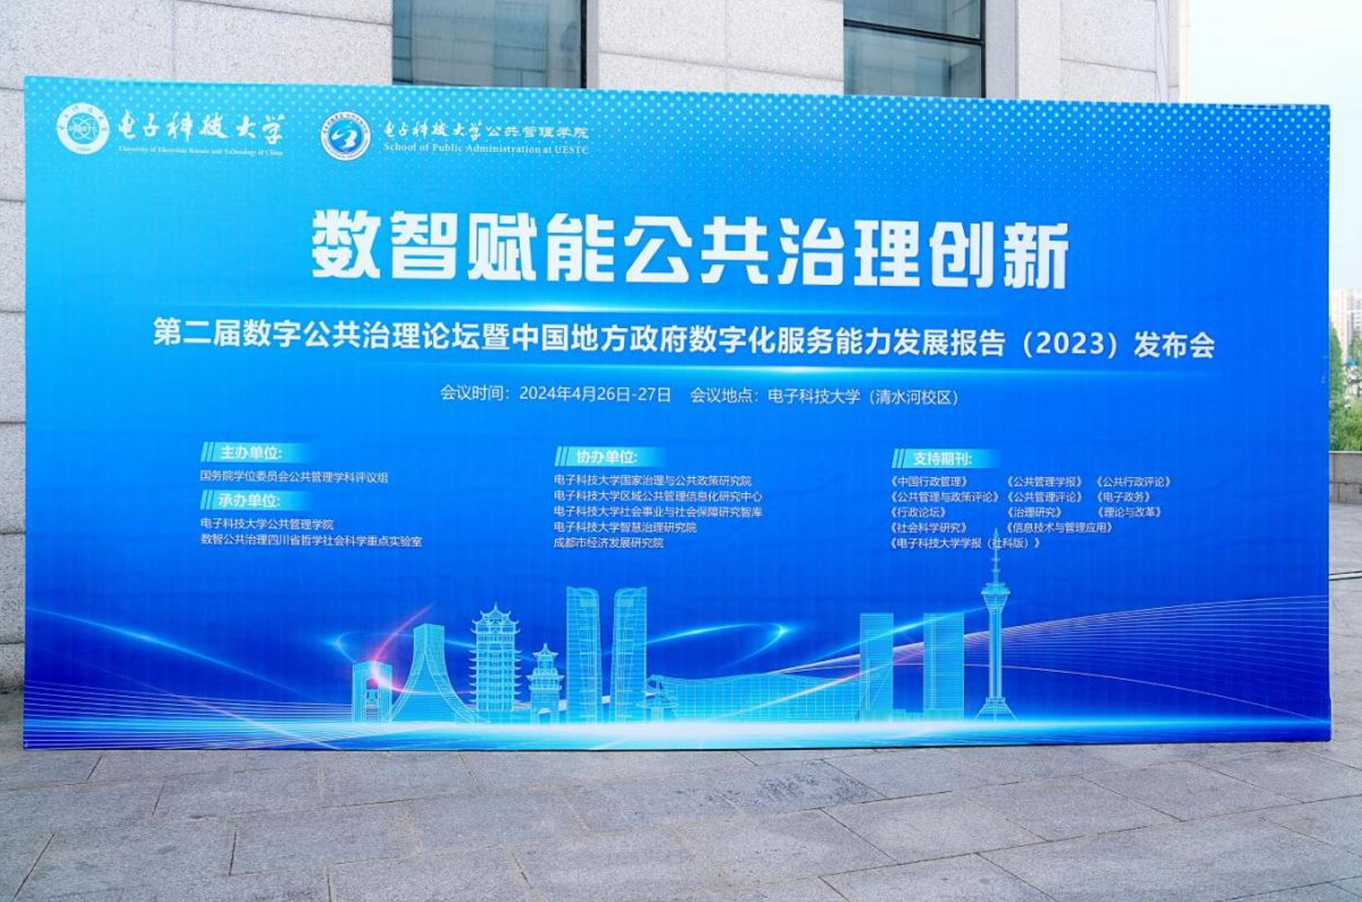 第二屆數字公共治理論壇暨中國地方政府數字化服務能力發展報告（2023）發布會在電子科技大學舉行